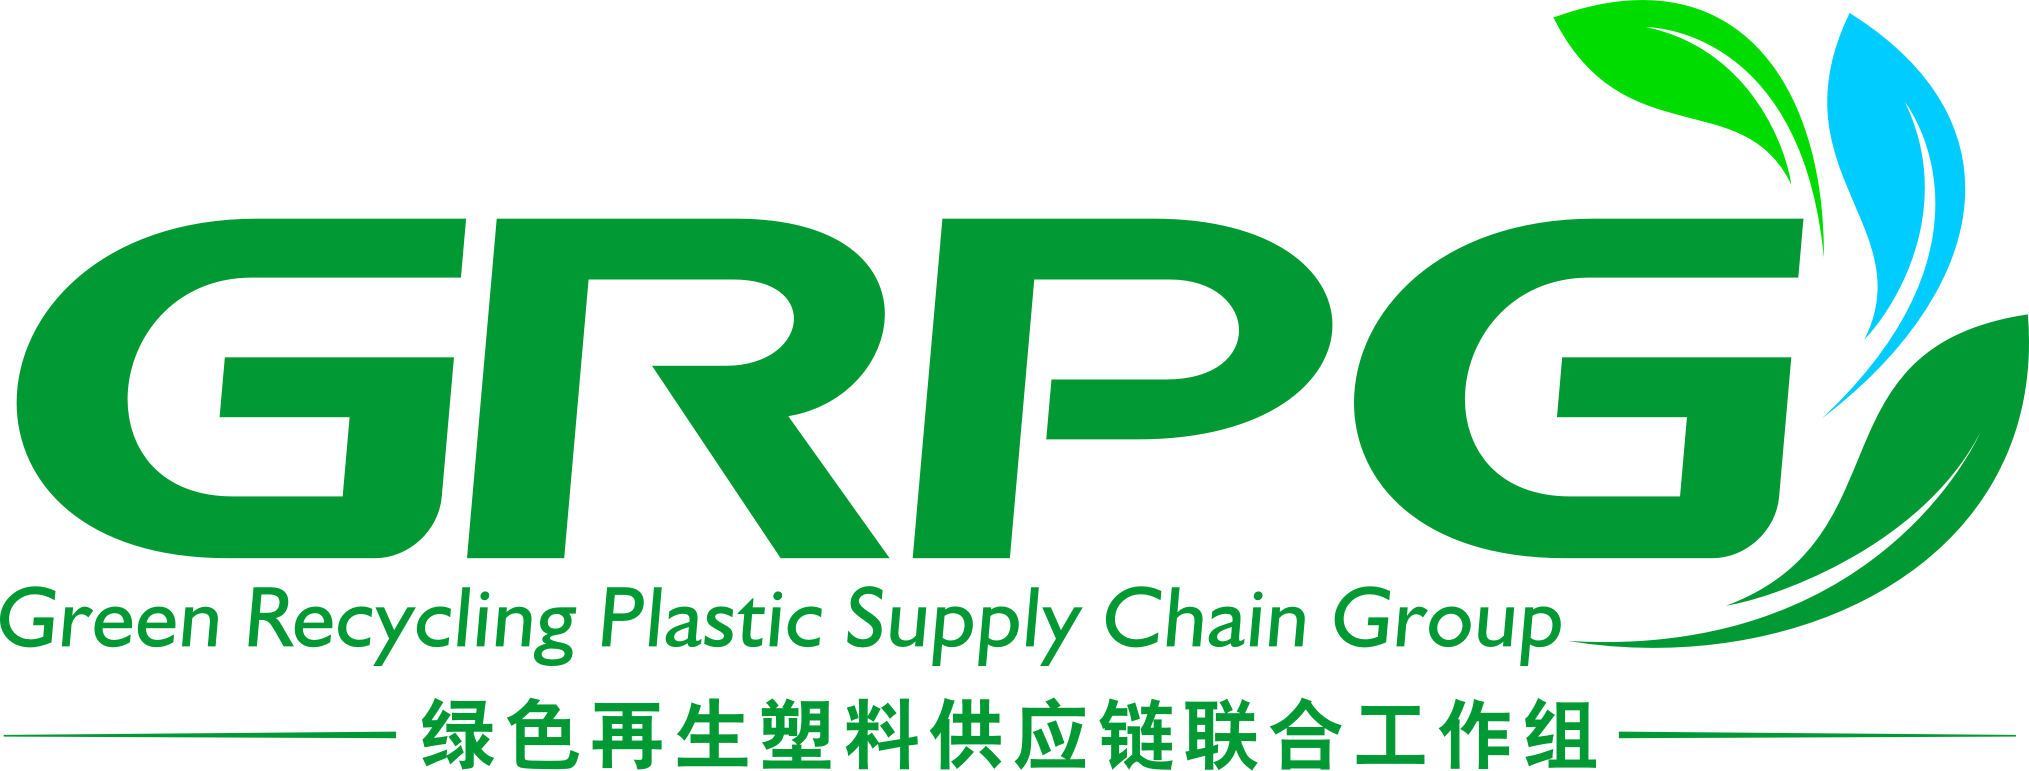 绿色再生塑料供应链联合工作小组.png